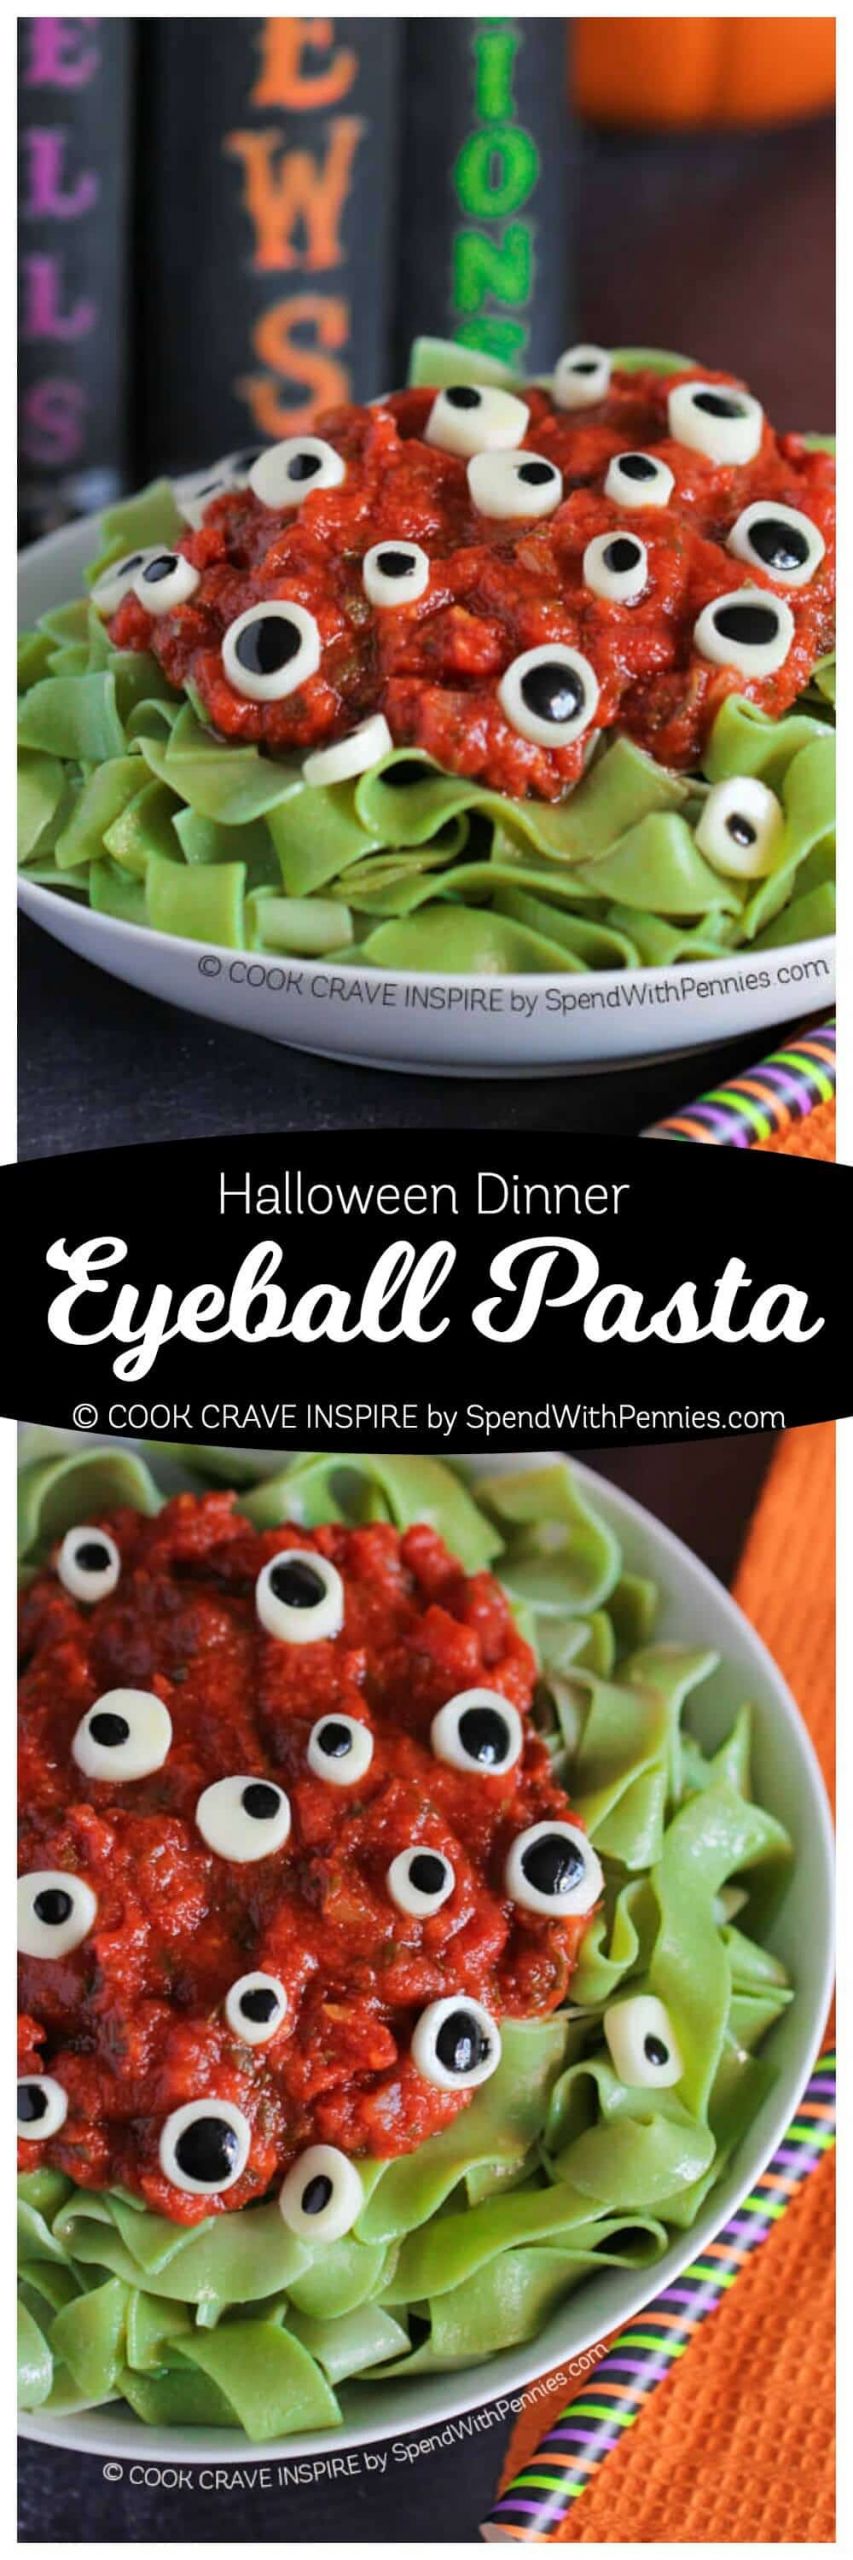 Fun Halloween Dinner Party Ideas
 Eyeball Pasta Halloween Dinner Idea Spend With Pennies